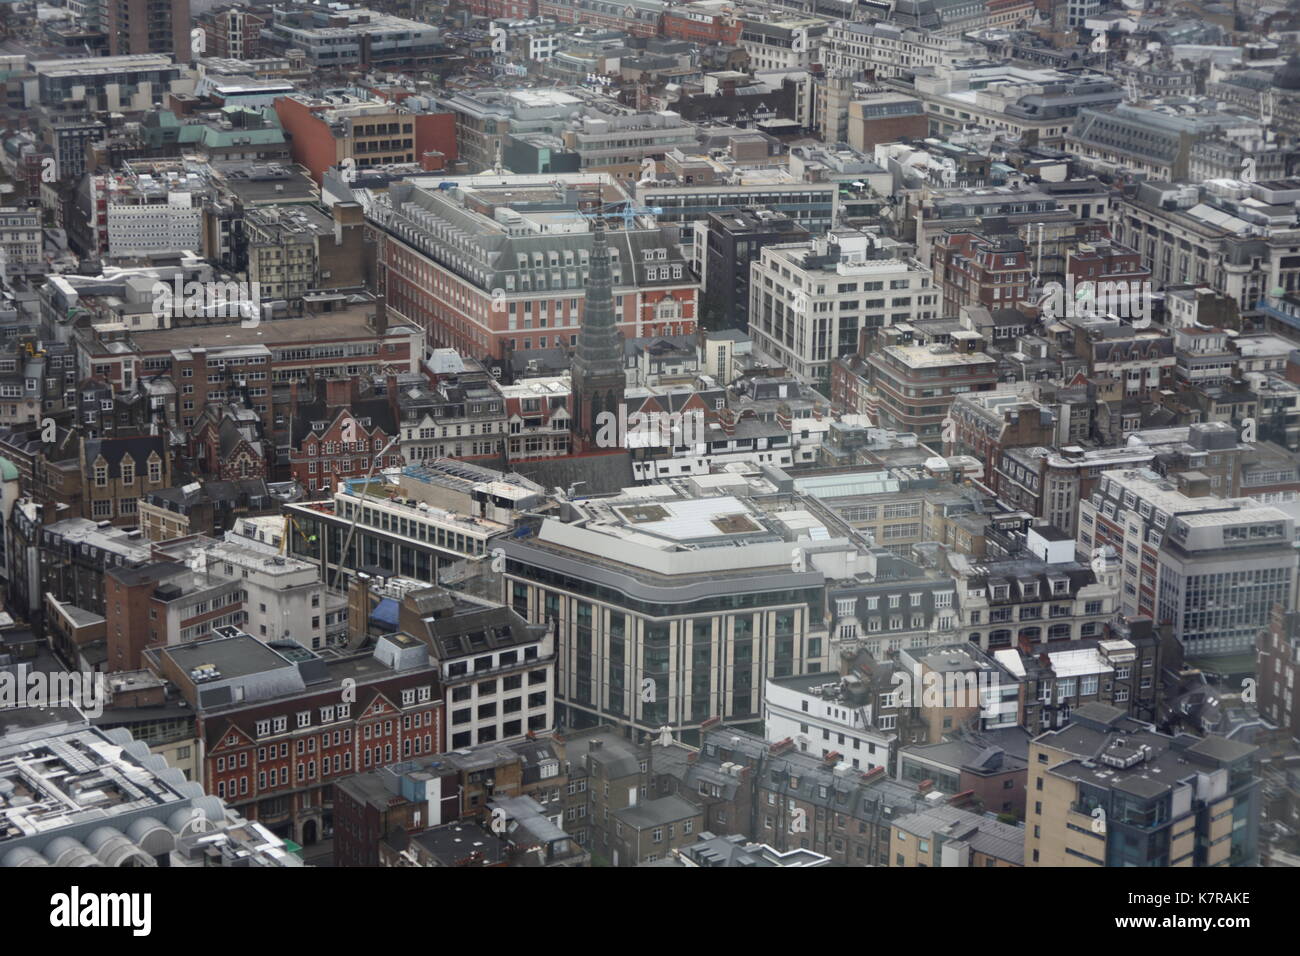 Open House London feiert 25-jähriges Bestehen und öffnet die Londoner Gebäude Türen über das Wochenende, London, UK Stockfoto